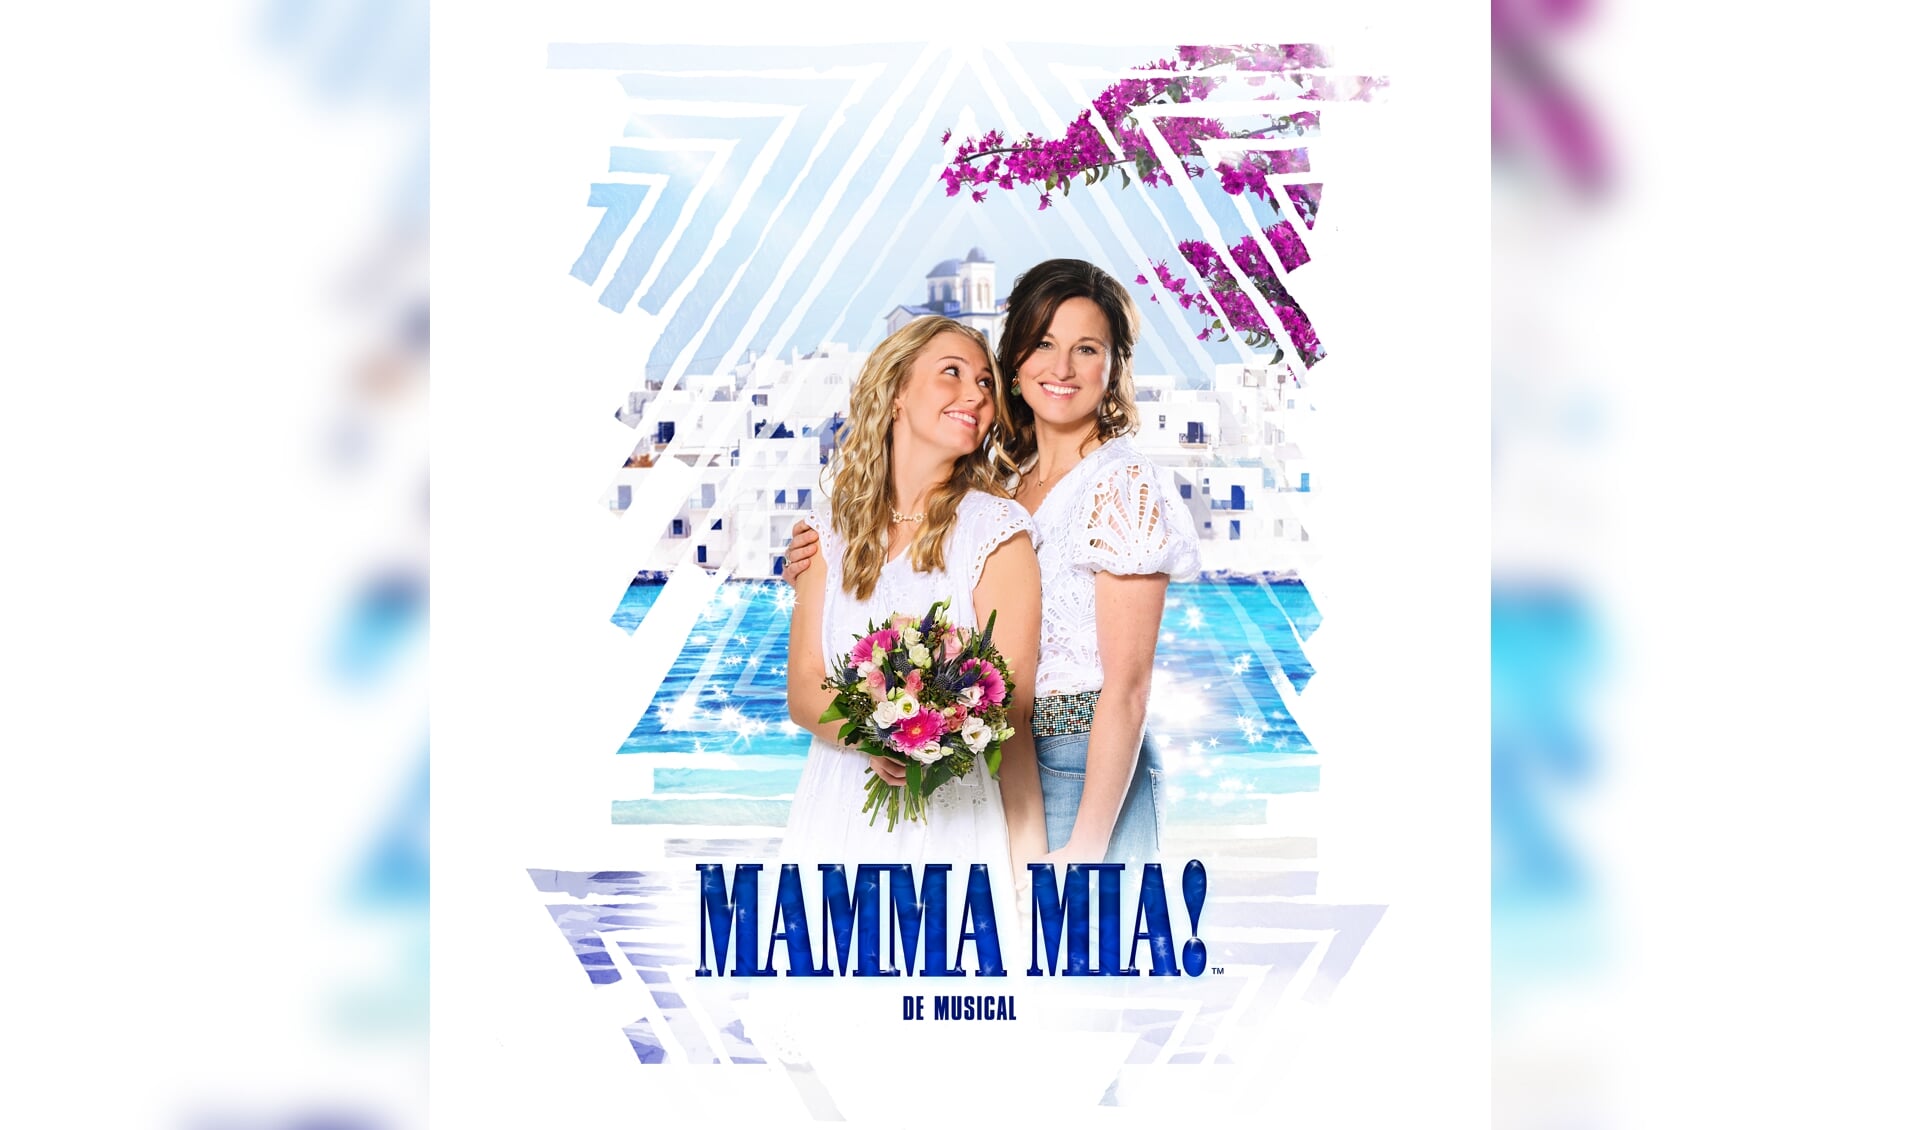 ABBAmusical Mamma Mia komt naar Den Bosch Adverteren Den Bosch De